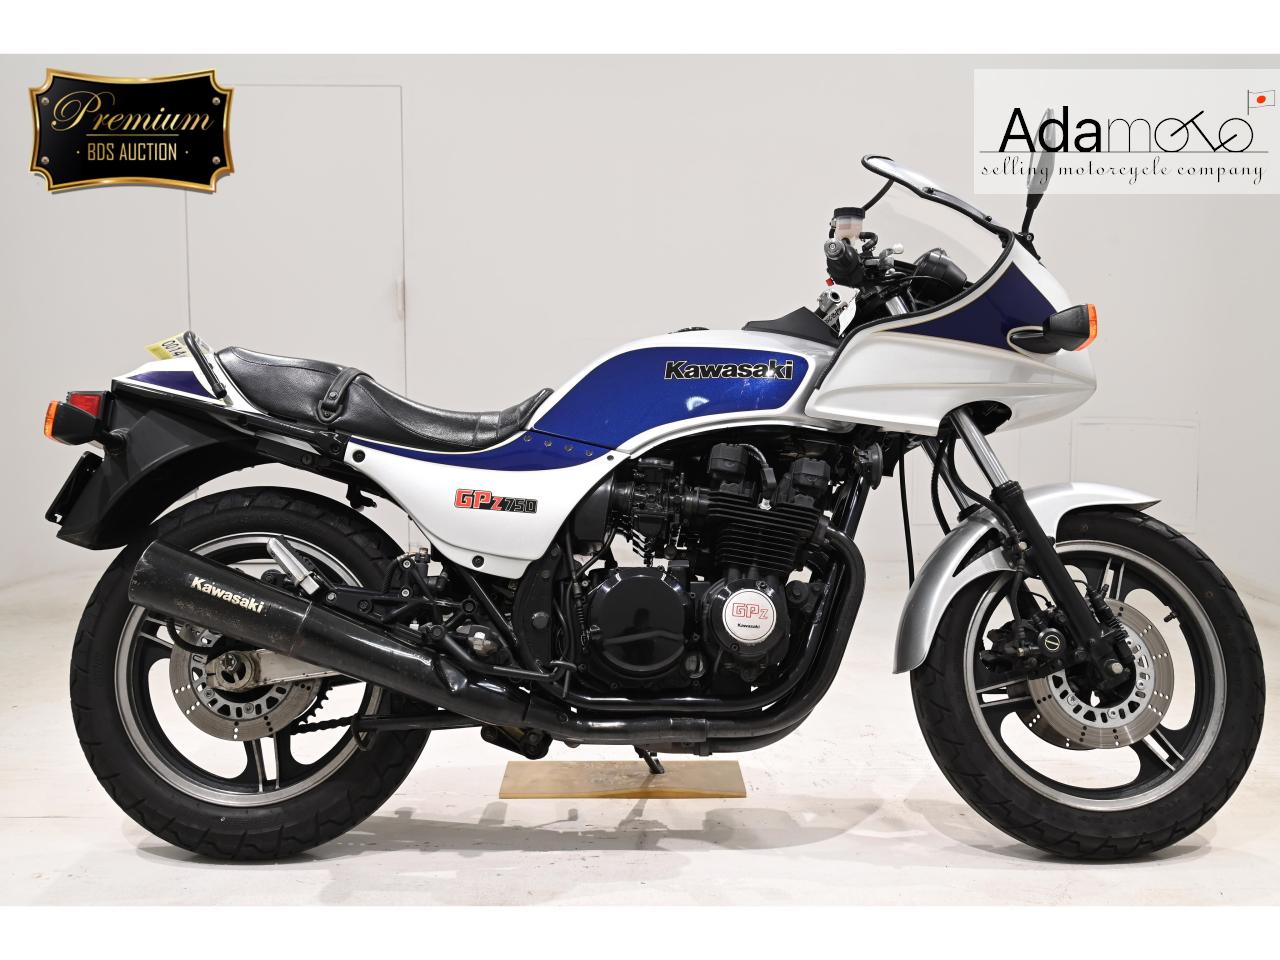 Kawasaki GPZ750 - Adamoto - Motorcycles from Japan